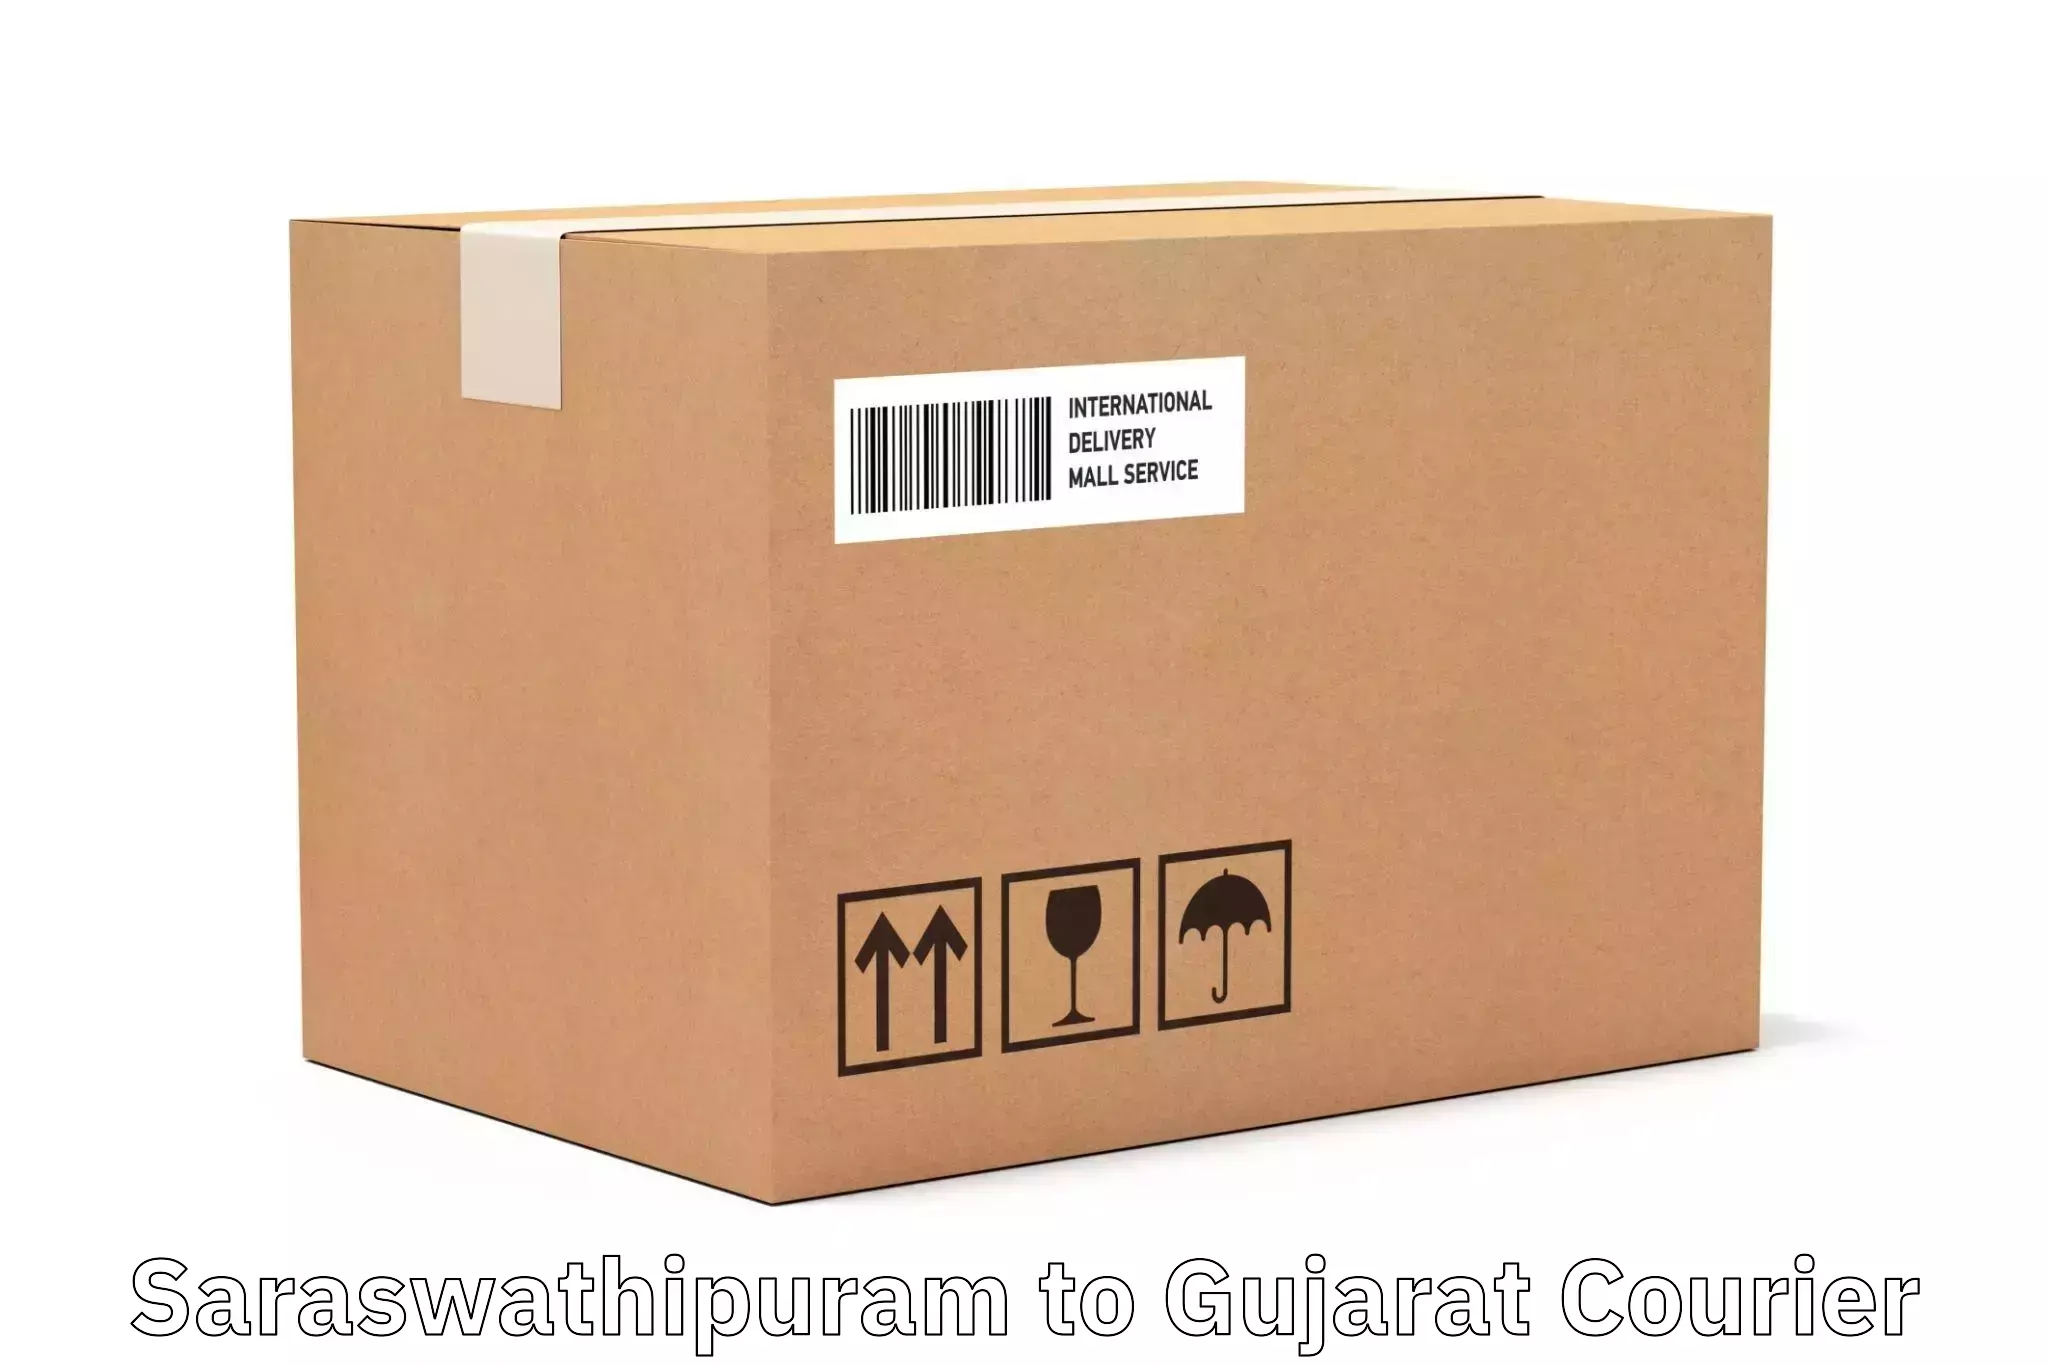 High-speed parcel service Saraswathipuram to Ankleshwar